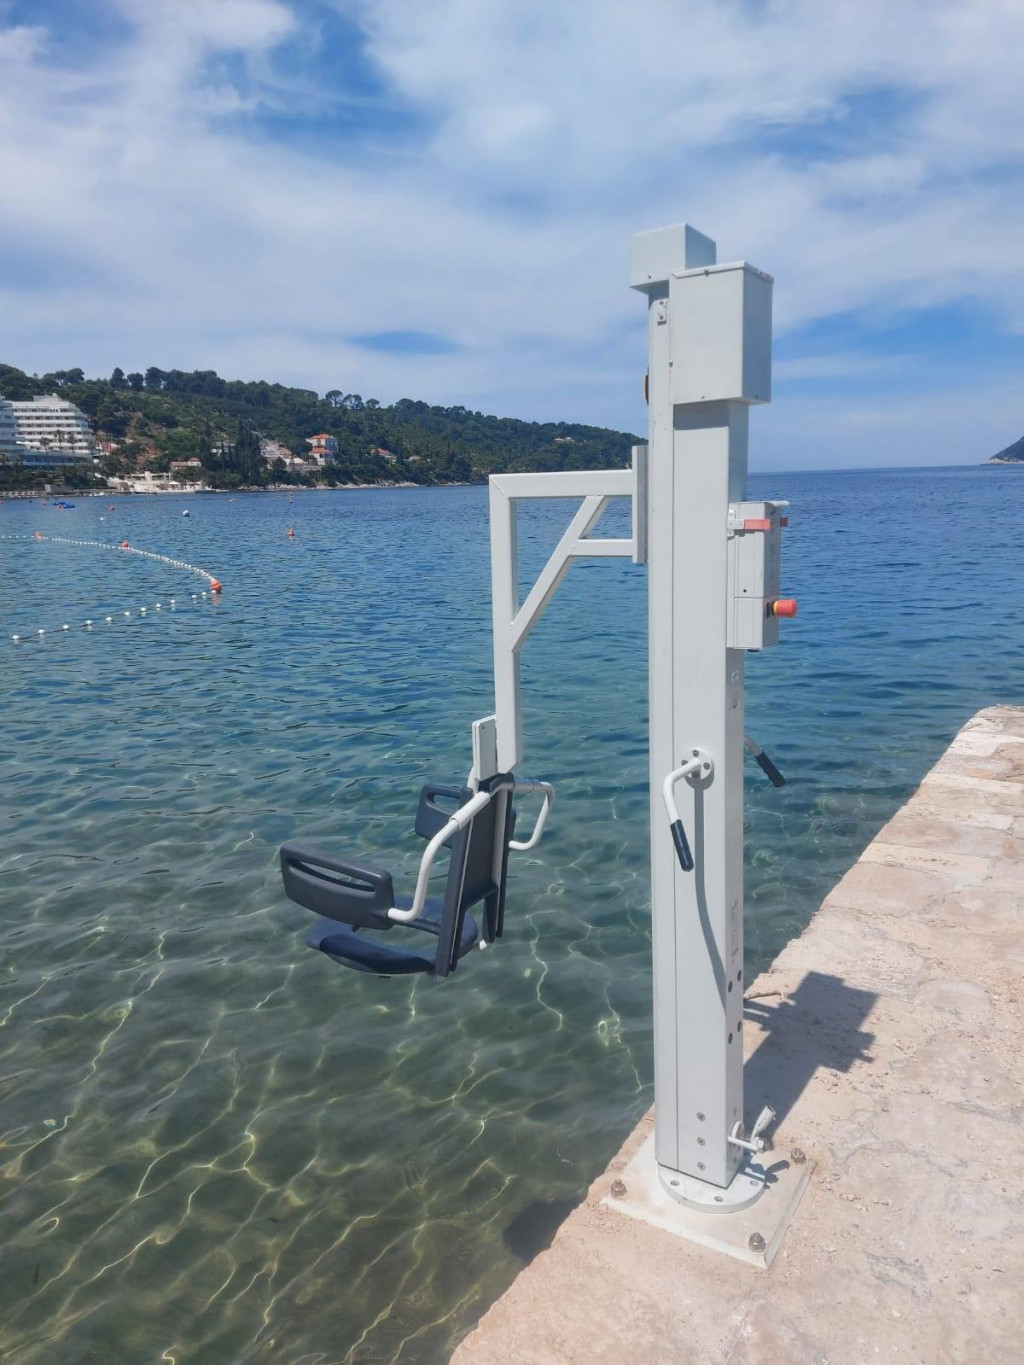 Grad Dubrovnik postavio dizala za osobe s invaliditetom na Šipanu, Lopudu i Kalamoti